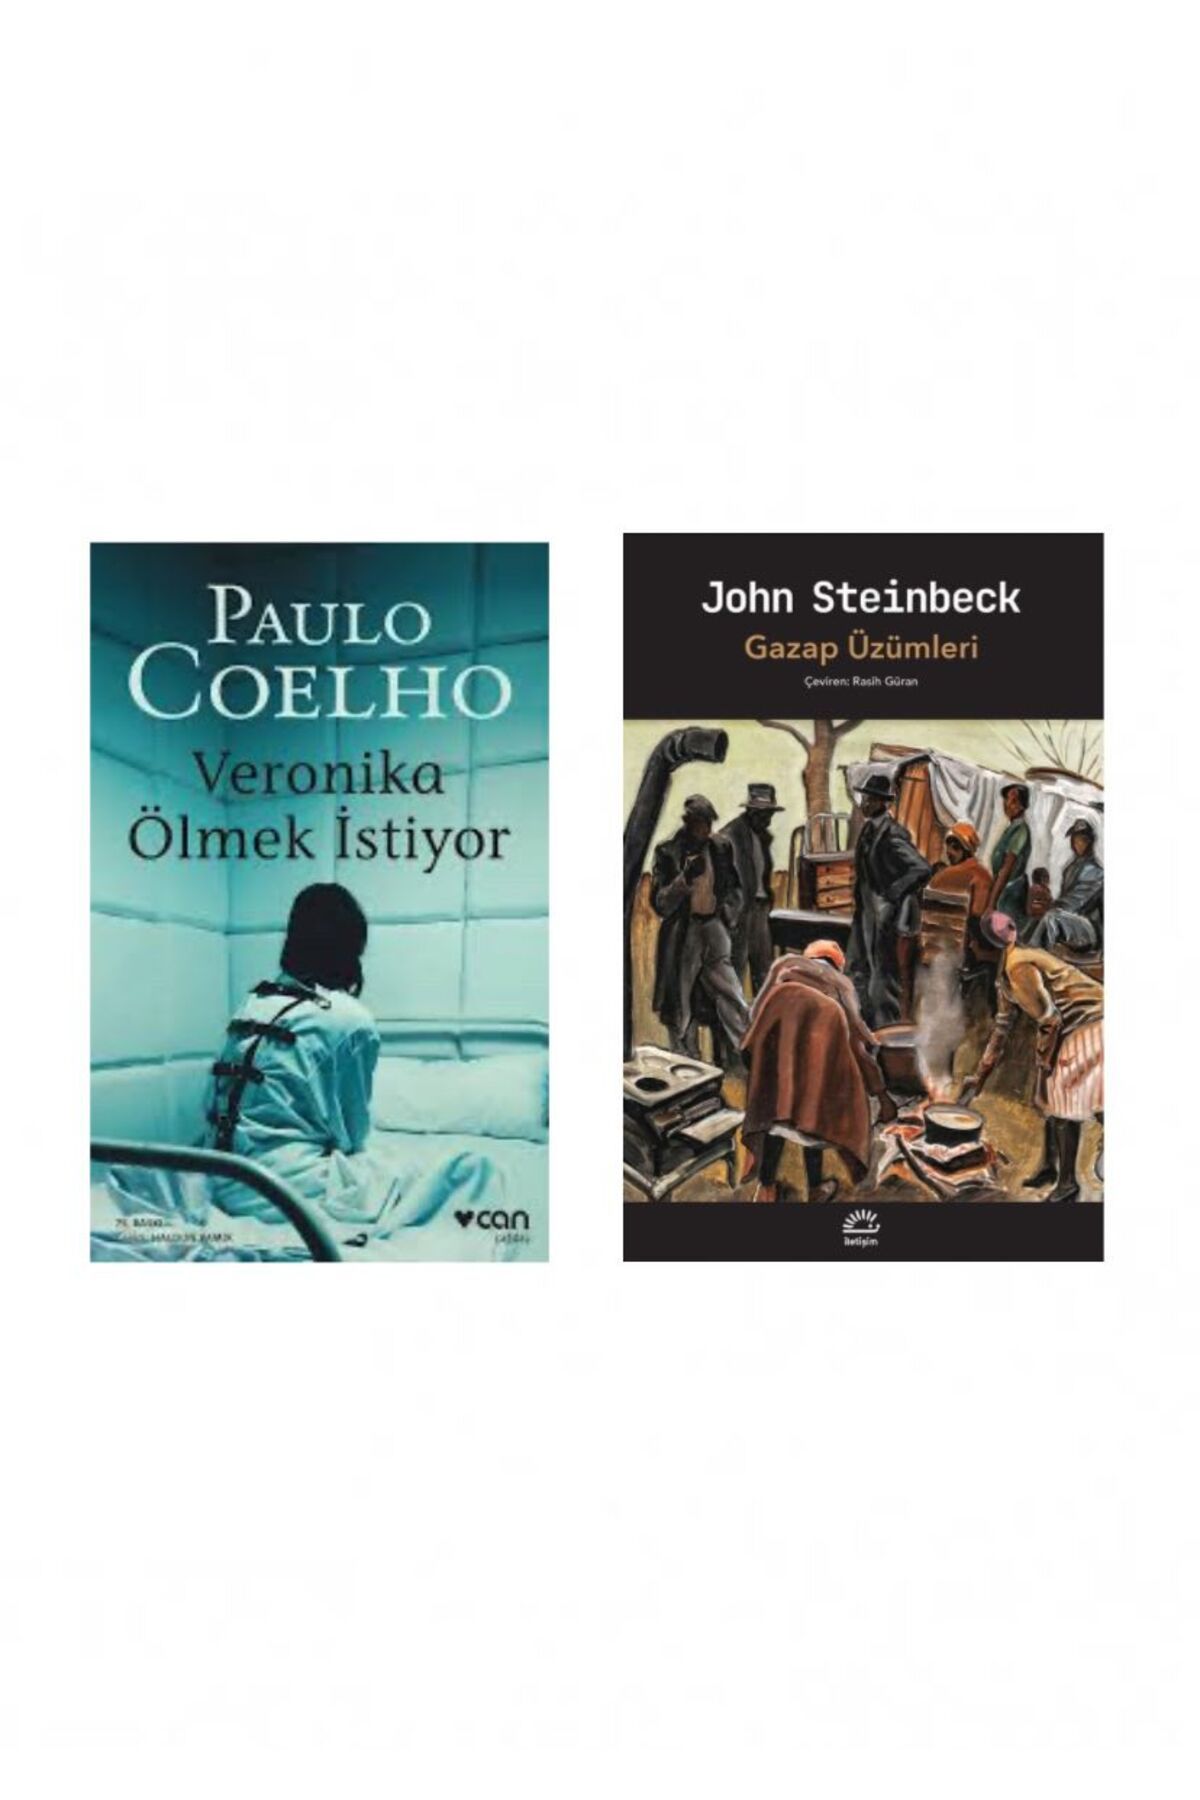 Can Yayınları Veronika Ölmek İstiyor - Paulo Coelho - Gazap Üzümleri - John Steinbeck